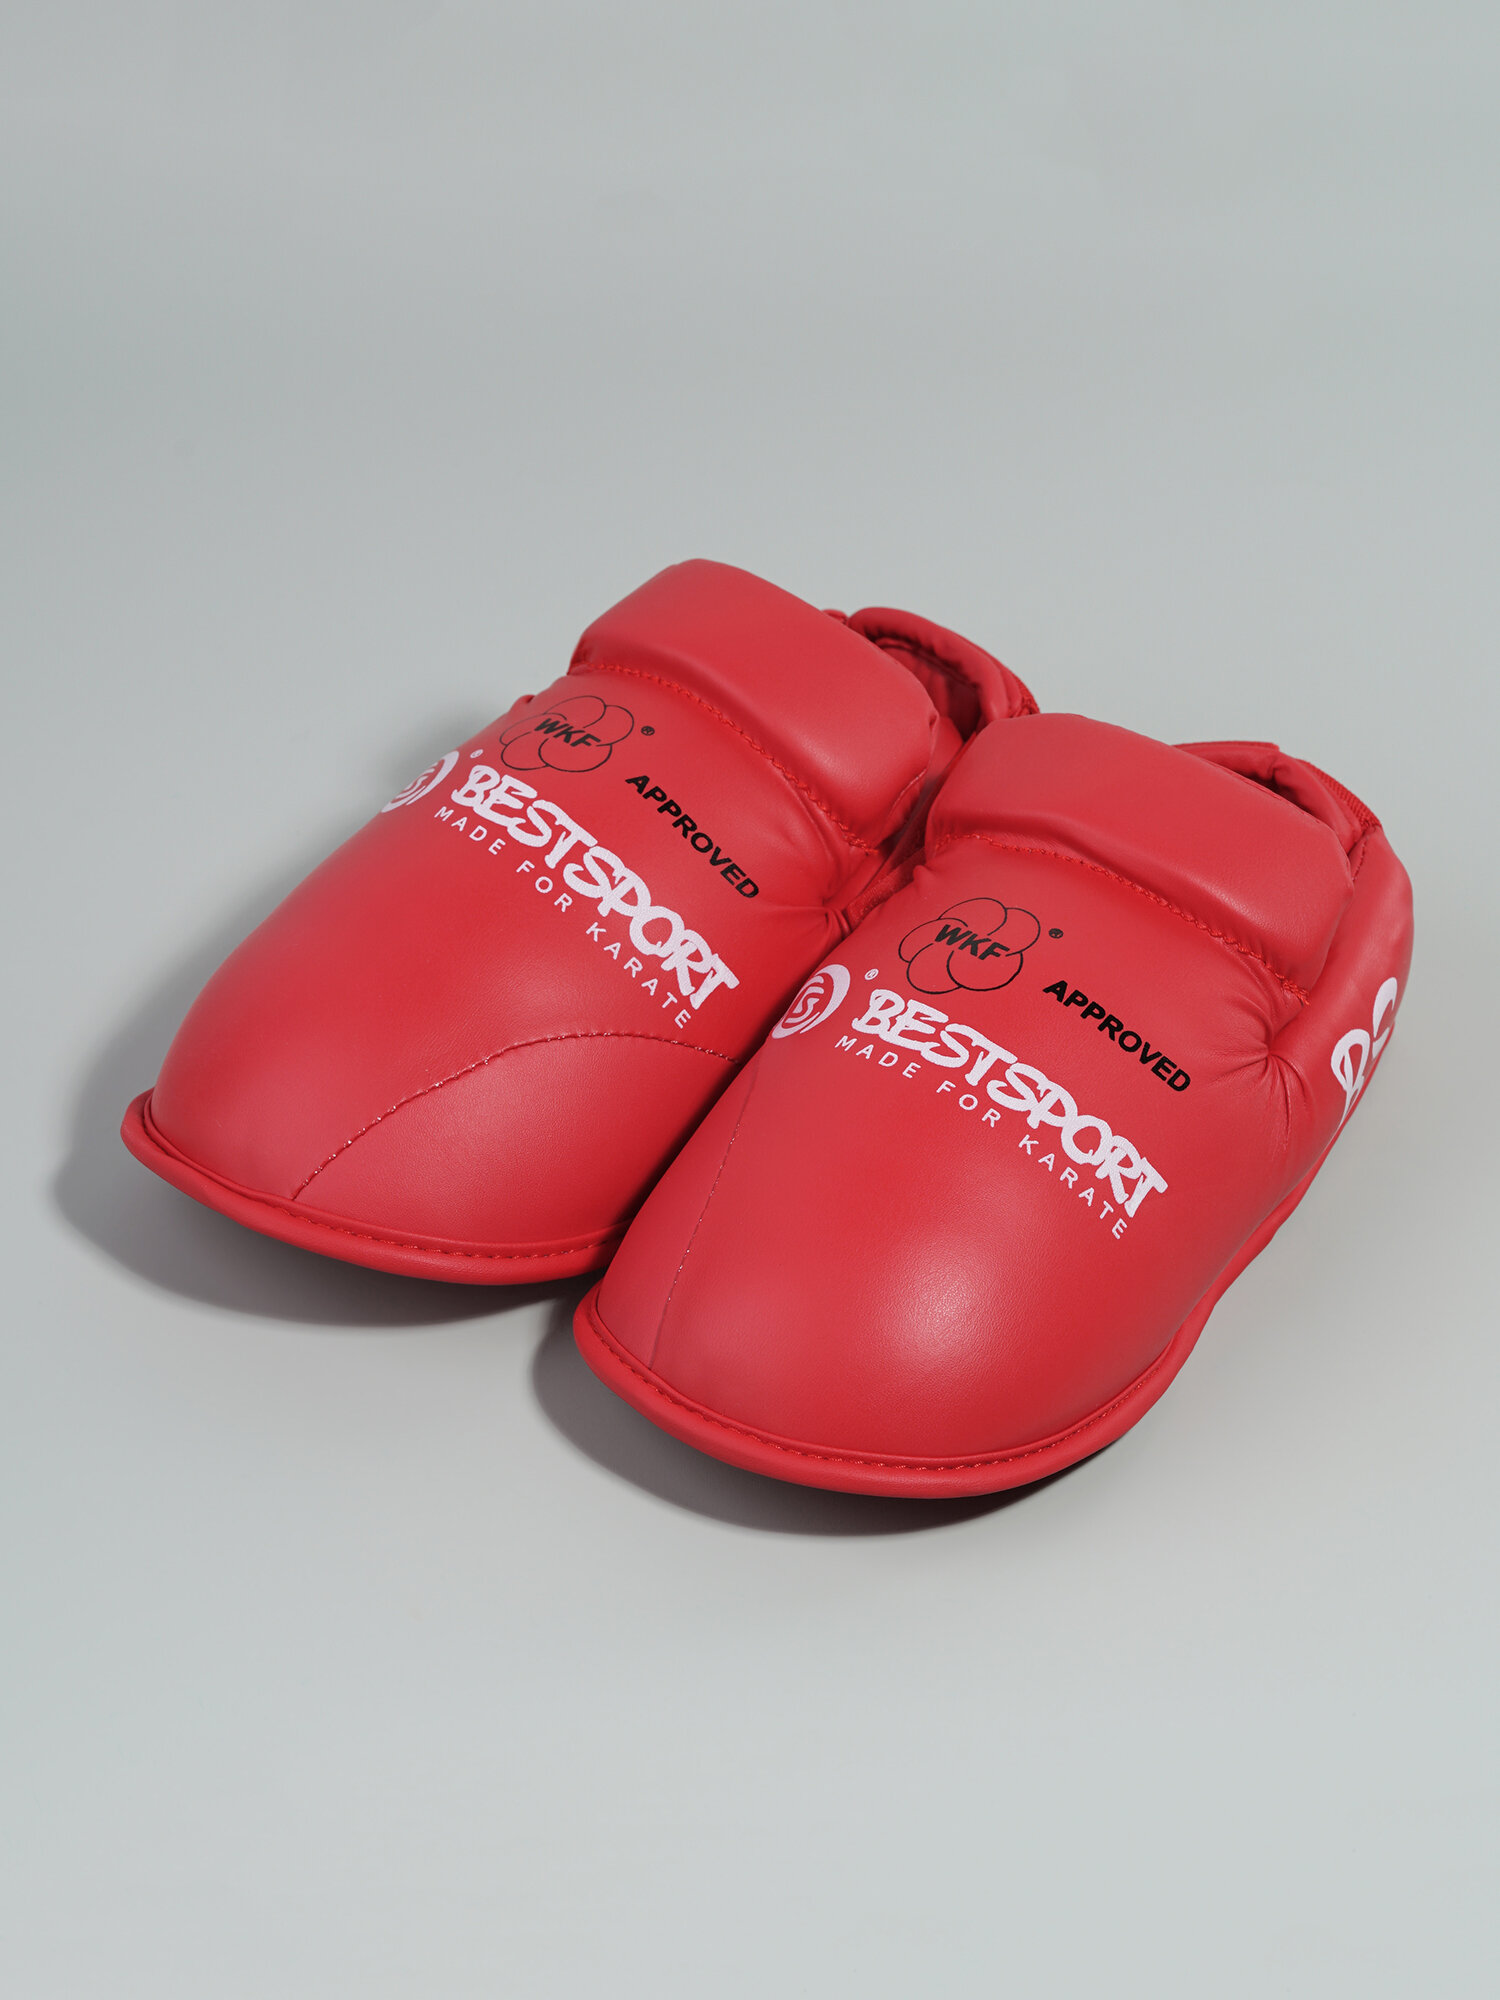 Комплект защиты голени и стопы для каратэ BestSport, красные, L (41-43)